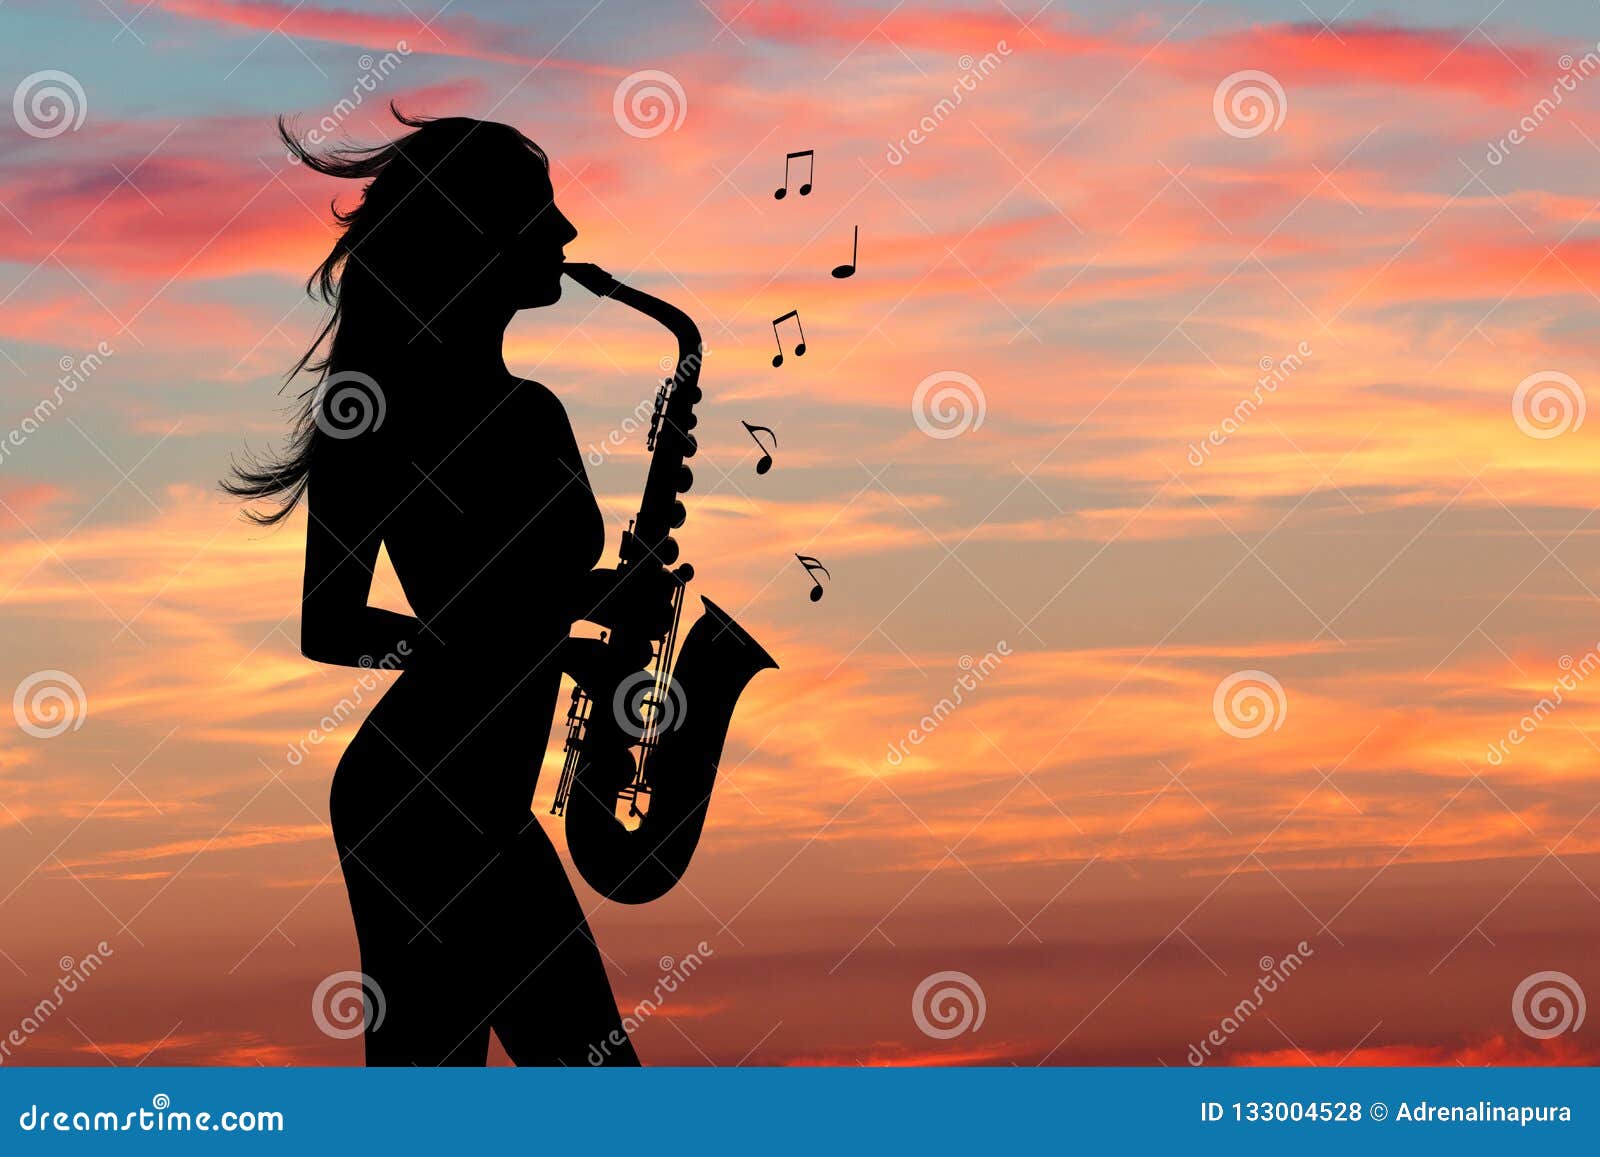 голая девушка играет на саксофоне